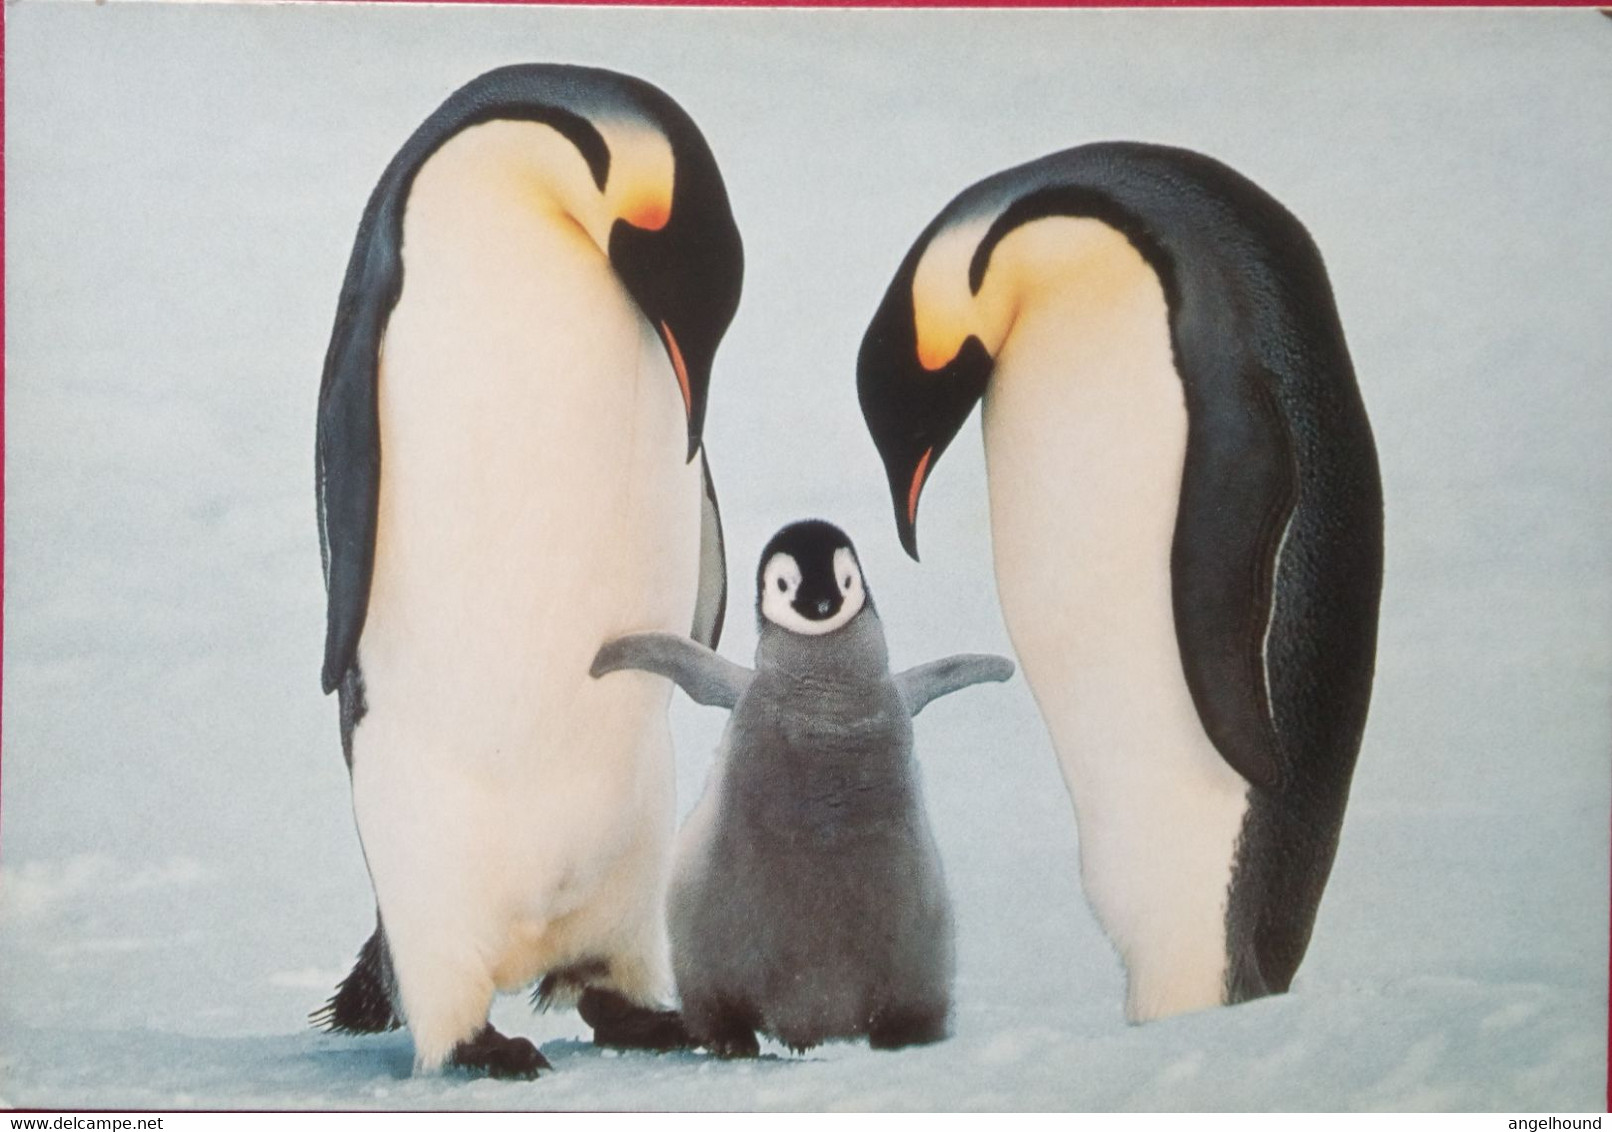 Emperor Penguin Family - Falkland